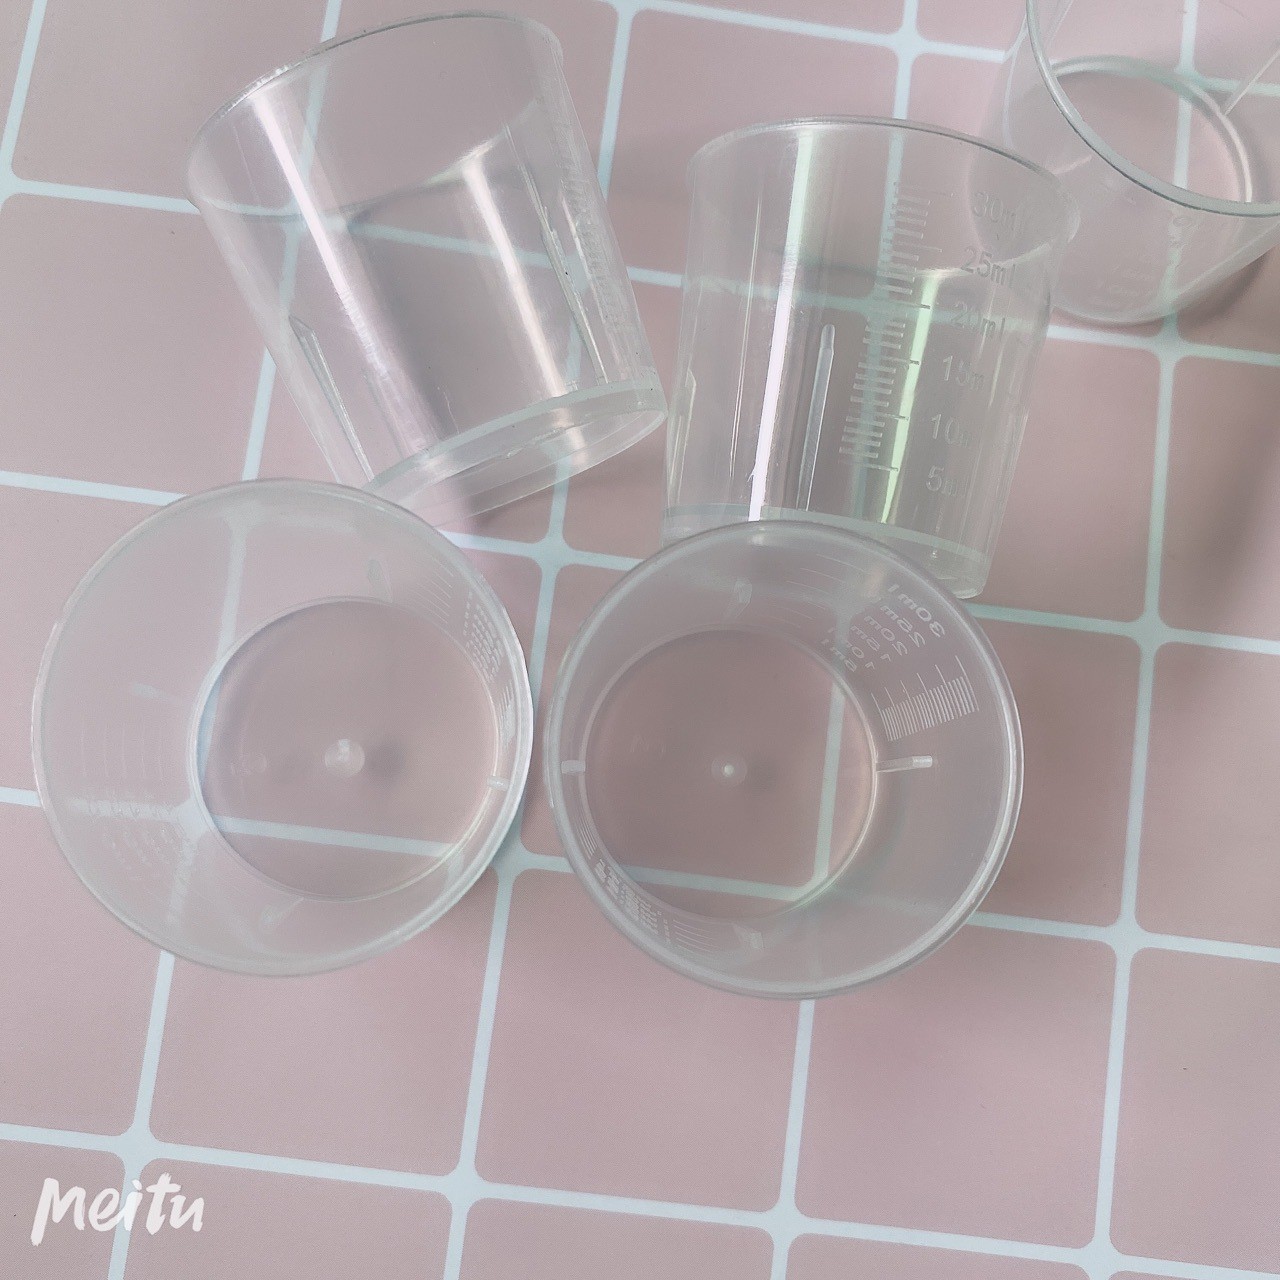 厂家批发 30ml毫升塑料量杯 塑料量筒pp小量杯 糖浆量杯 试验器皿